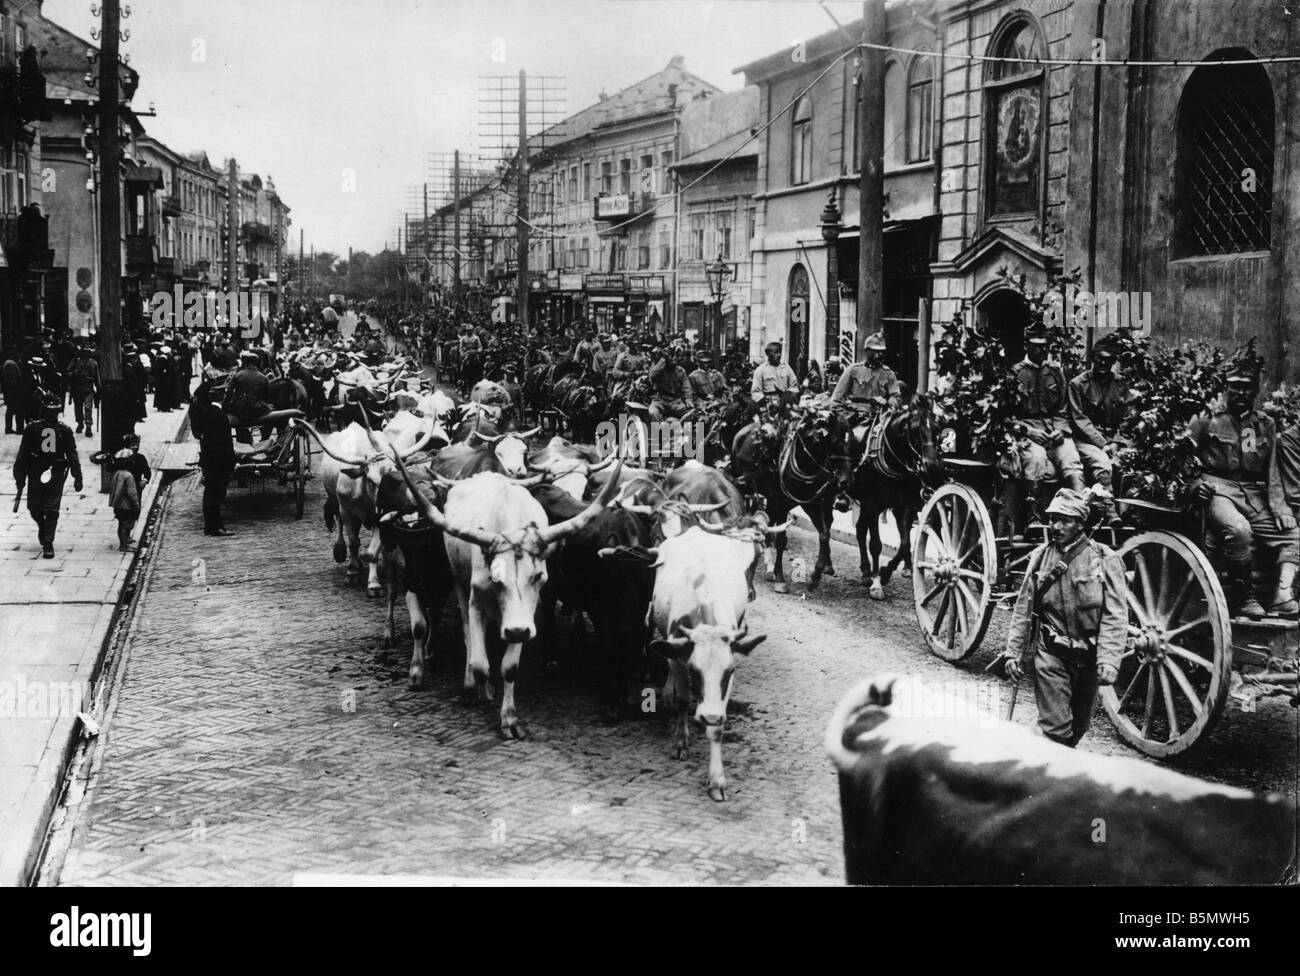 9OE 1915 7 30 A1 ingresso di truppe Austr a Lublino Photo World War 1 cattura di Lublino dal tedesco u k u k truppe sotto il generale von Foto Stock